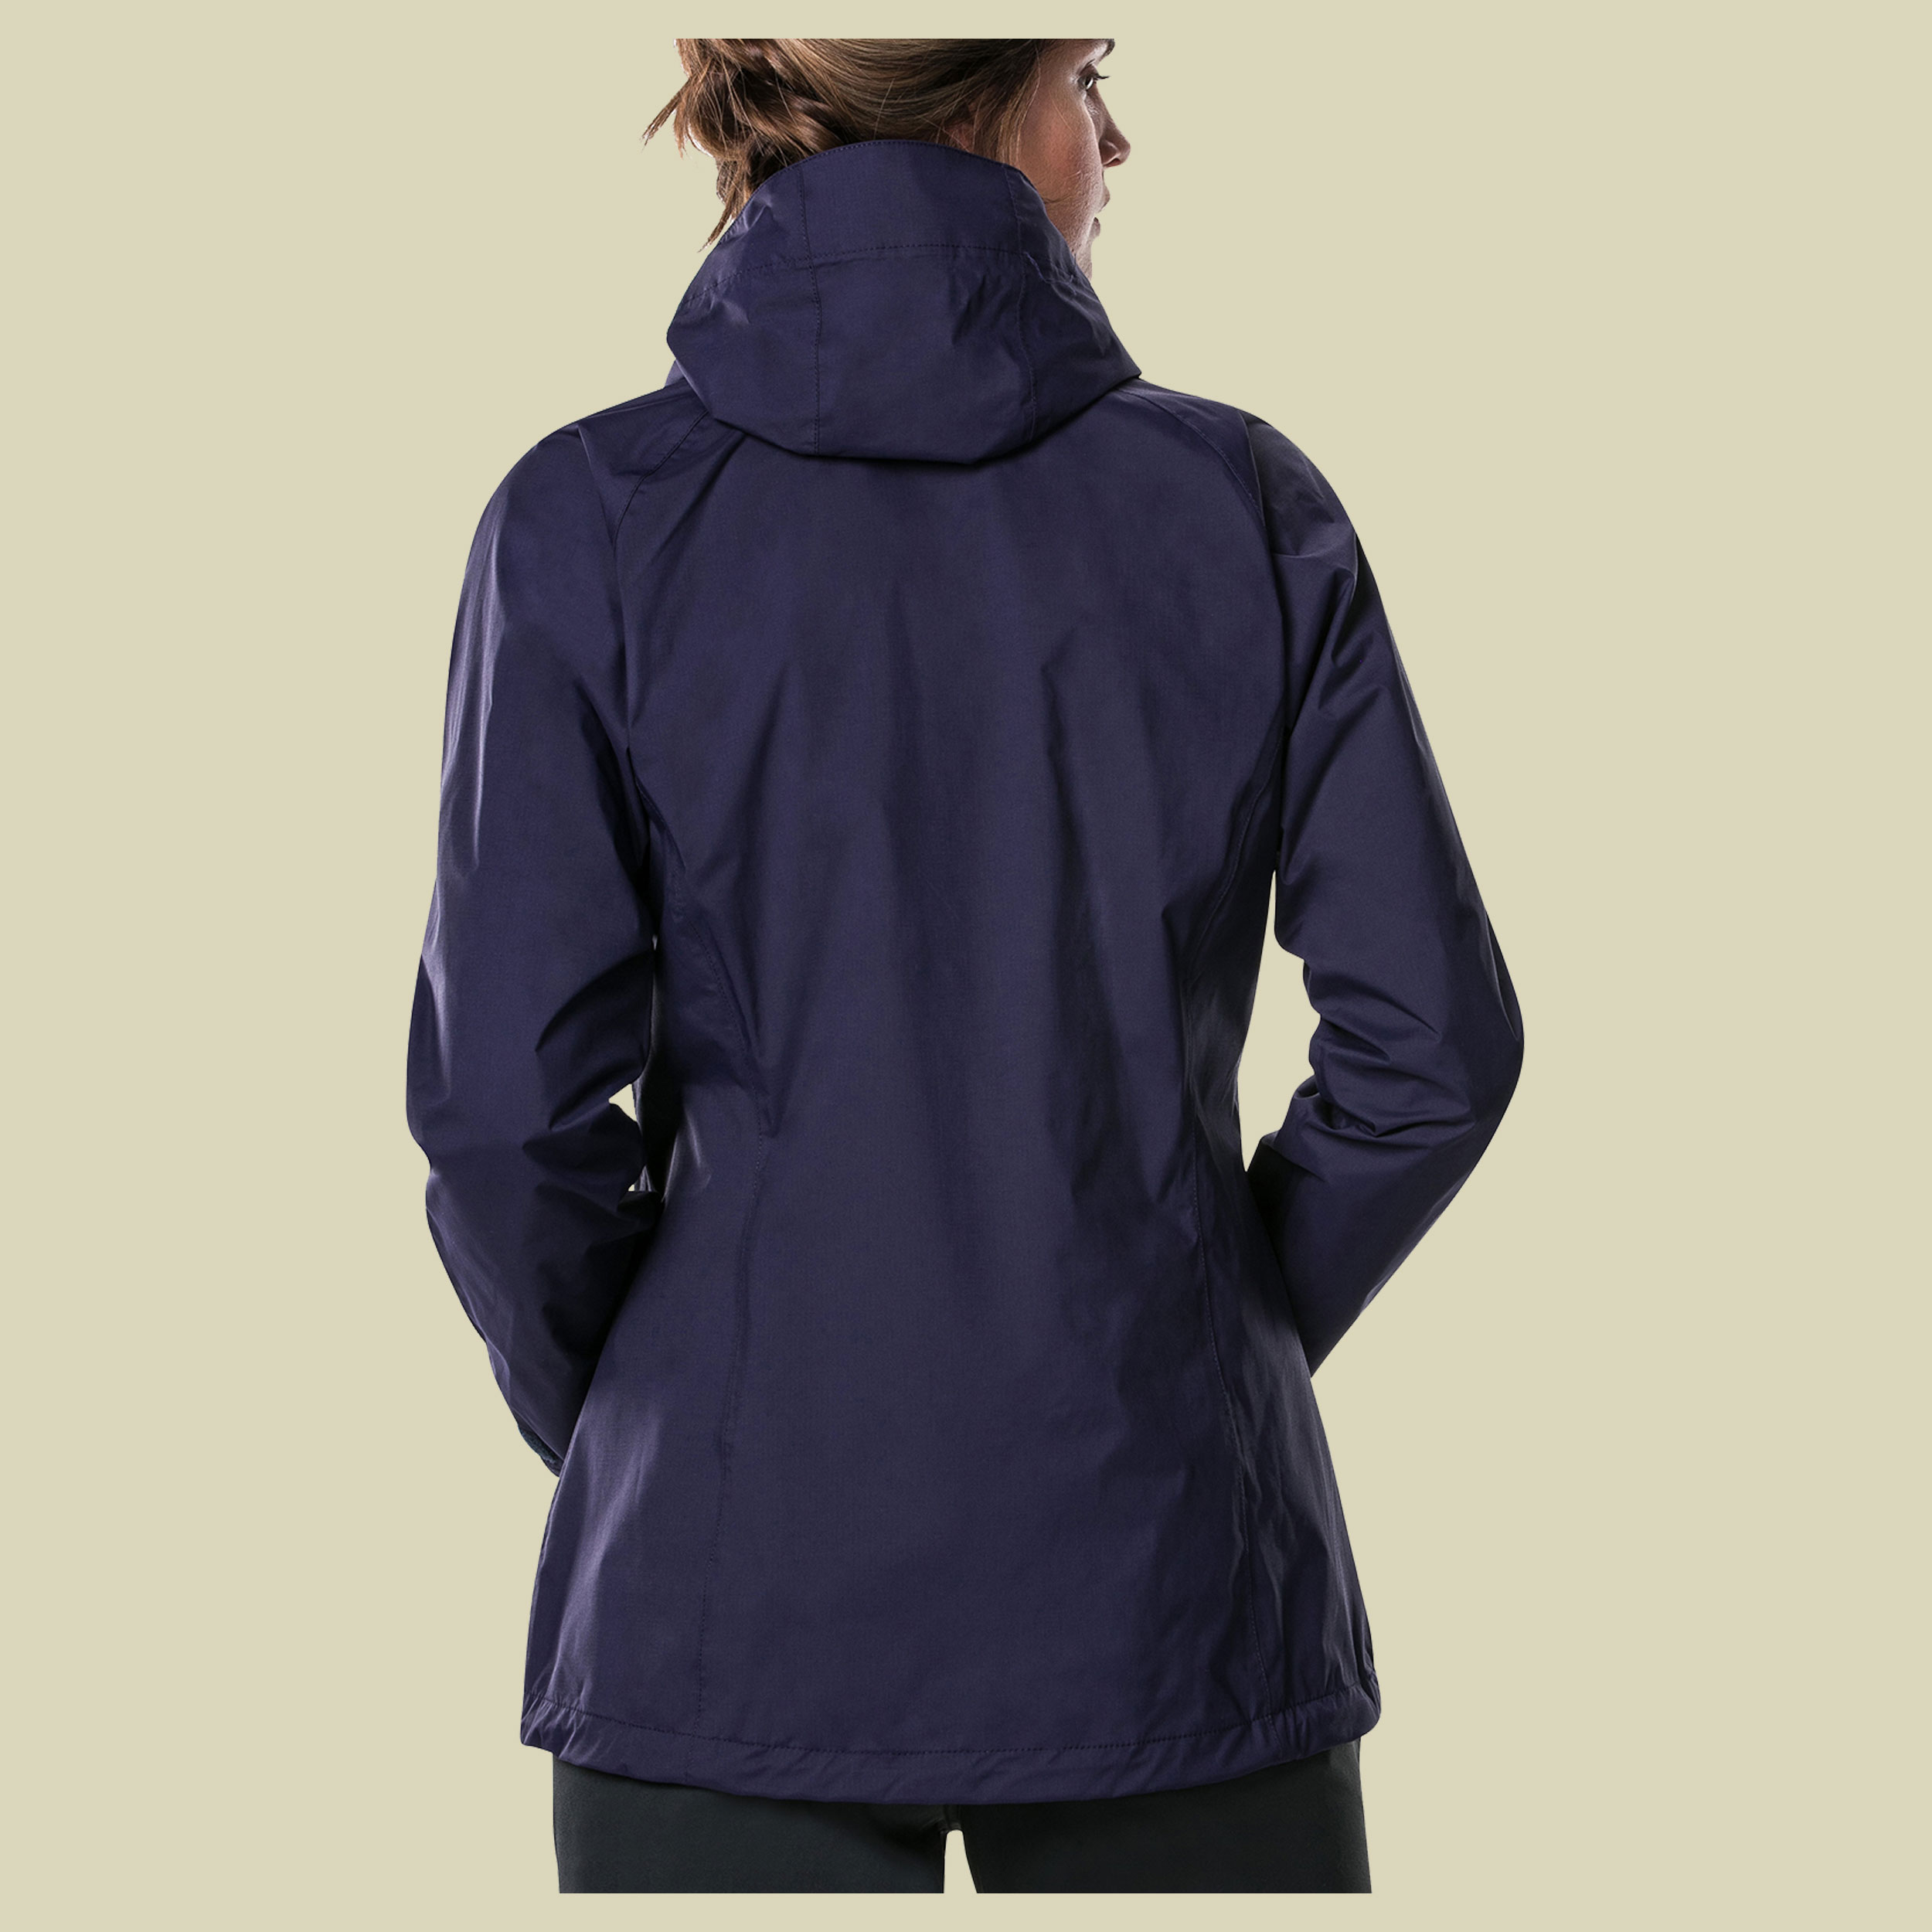 Deluge Pro Shell Jacket Women Größe 44 (18) Farbe evening blue